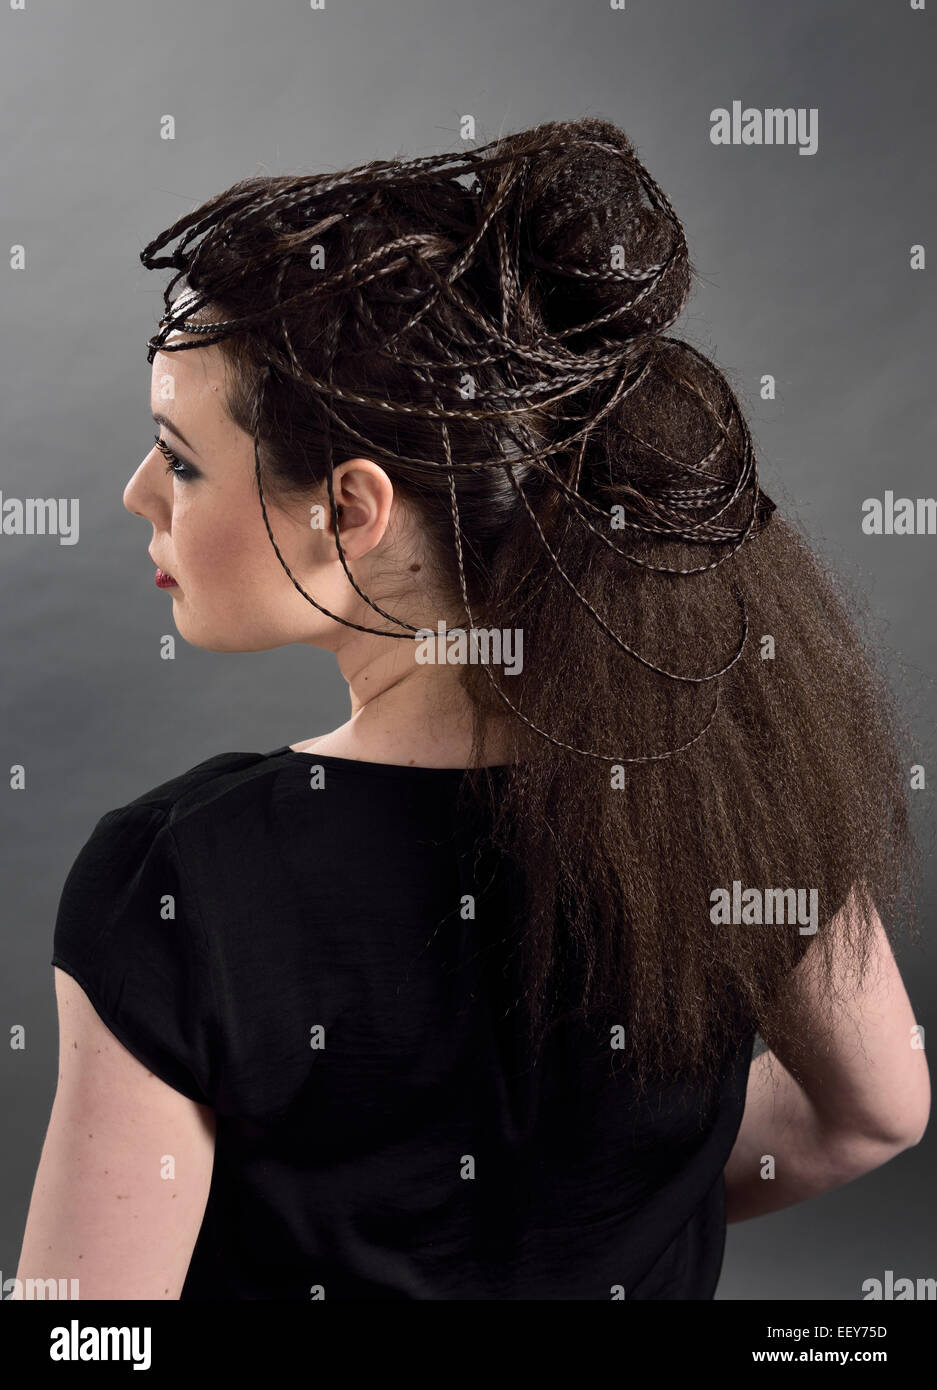 Seite Ansicht Porträt einer jungen Frau mit einer aufwendigen Frisur mit Zöpfen und gewelltem Haar Stockfoto